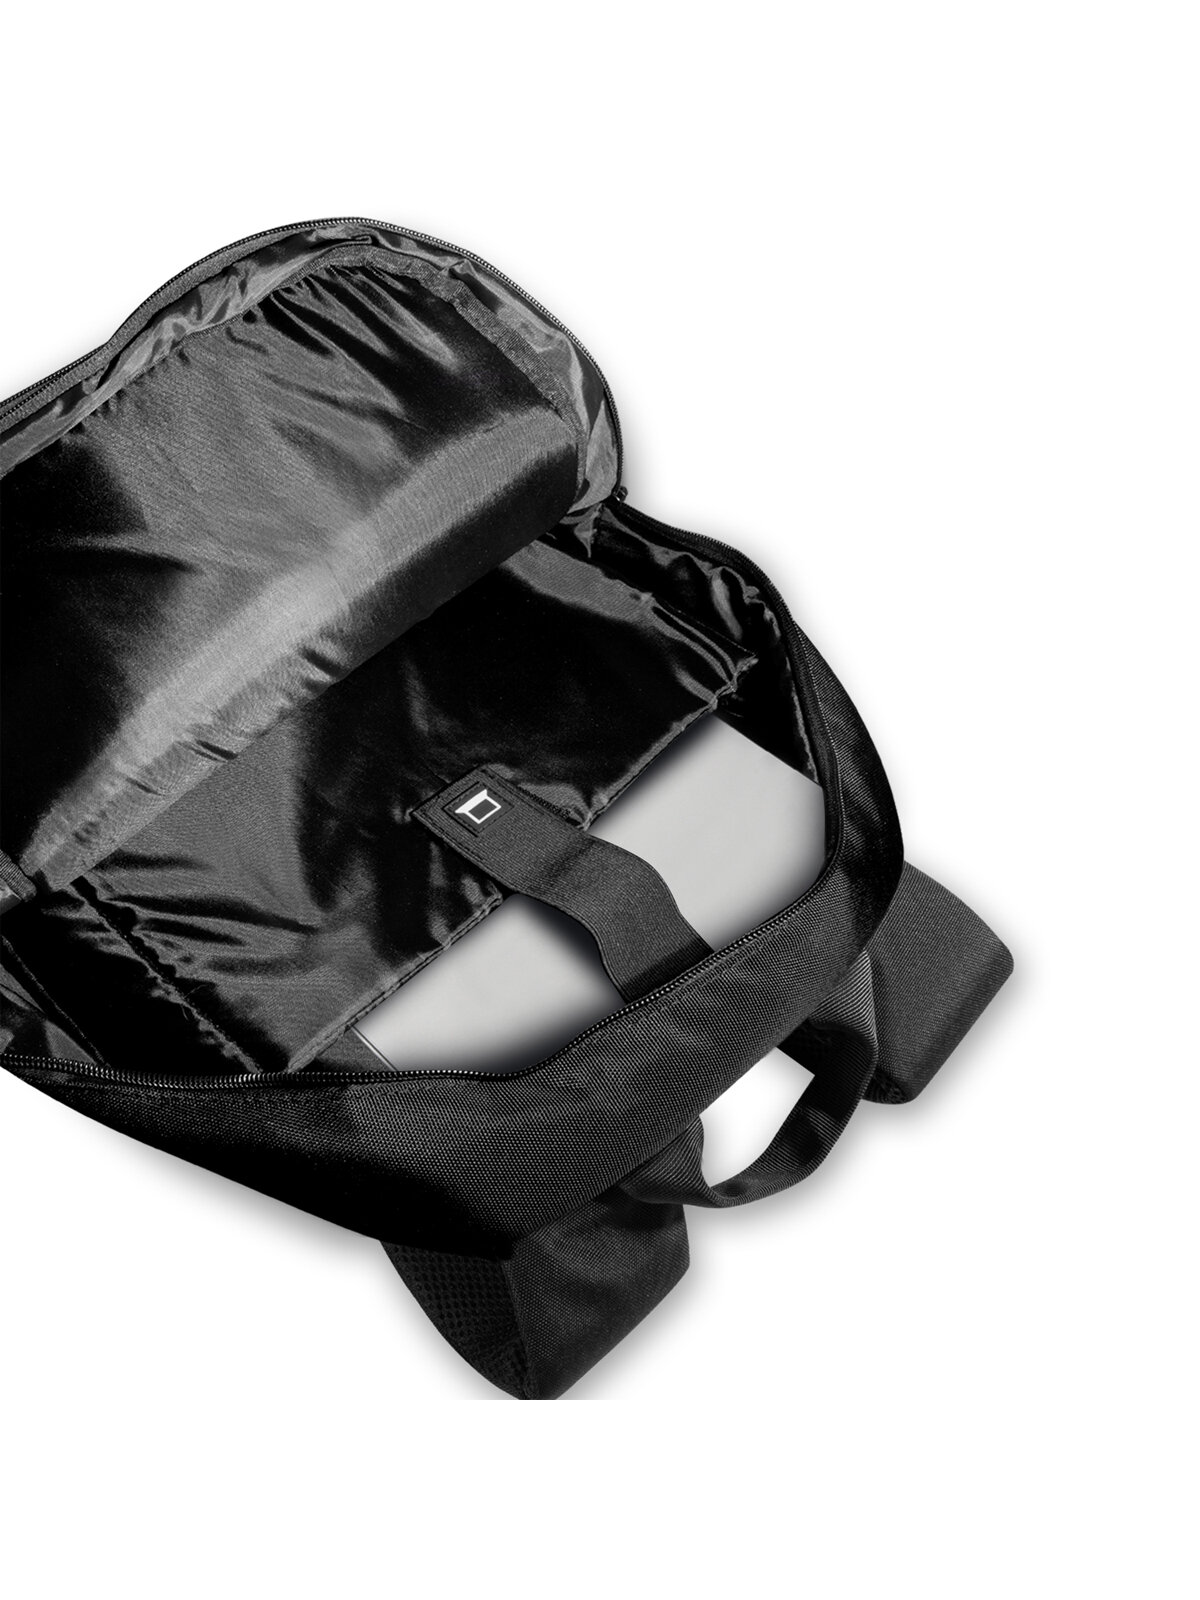 Рюкзак BMW Computer Backpack Carbon Perforated Compact для ноутбука до 15 дюймов, черный